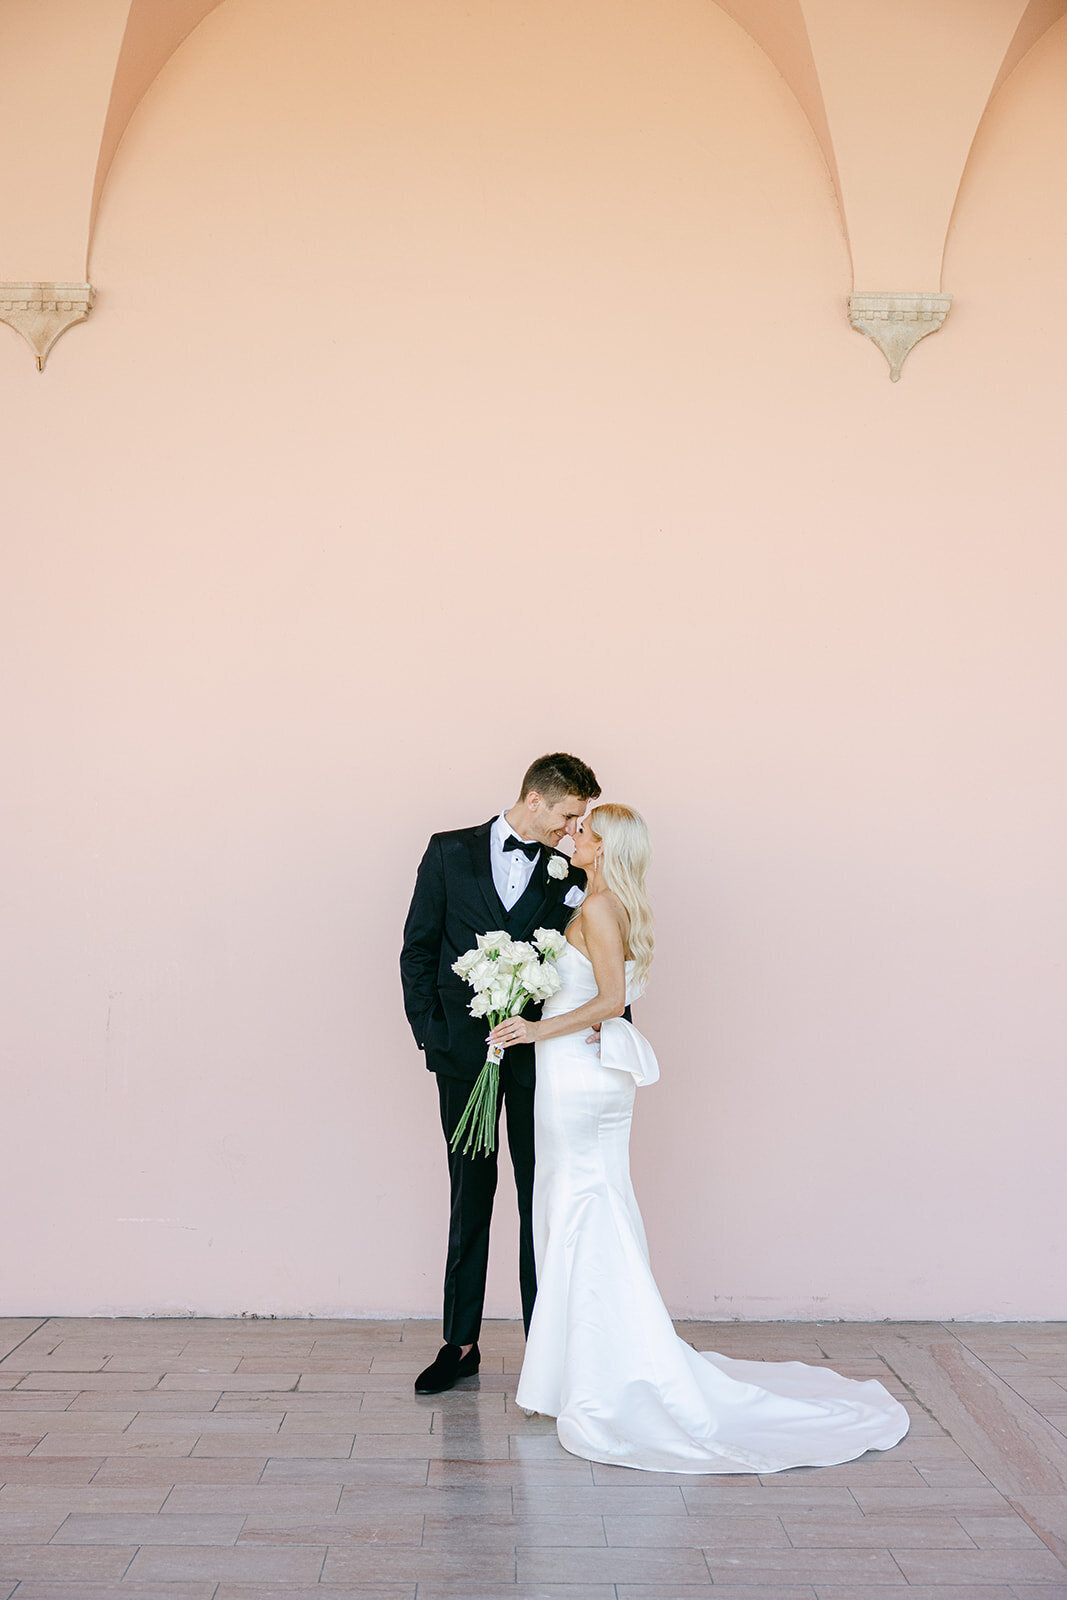 CORNELIA ZAISS PHOTOGRAPHY CARLY + JOEY WEDDING 0351_websize